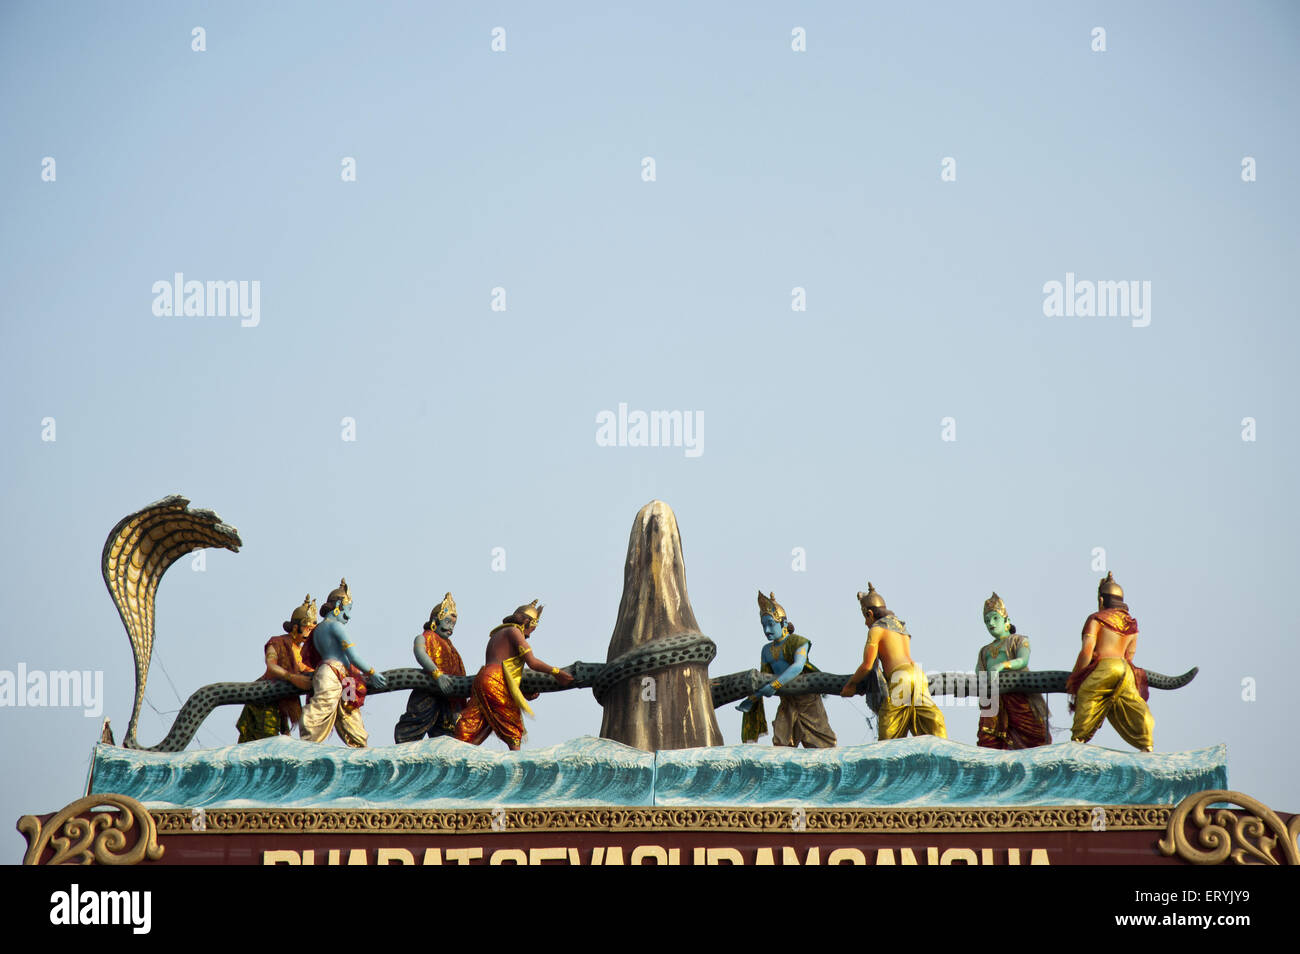 Samudra Manthan Indien Indische Hindu-Geschichte Episode Bhagavata Purana Vishnu Purana Amrita das Meer von Hindu-Göttern aufwüchsig Stockfoto